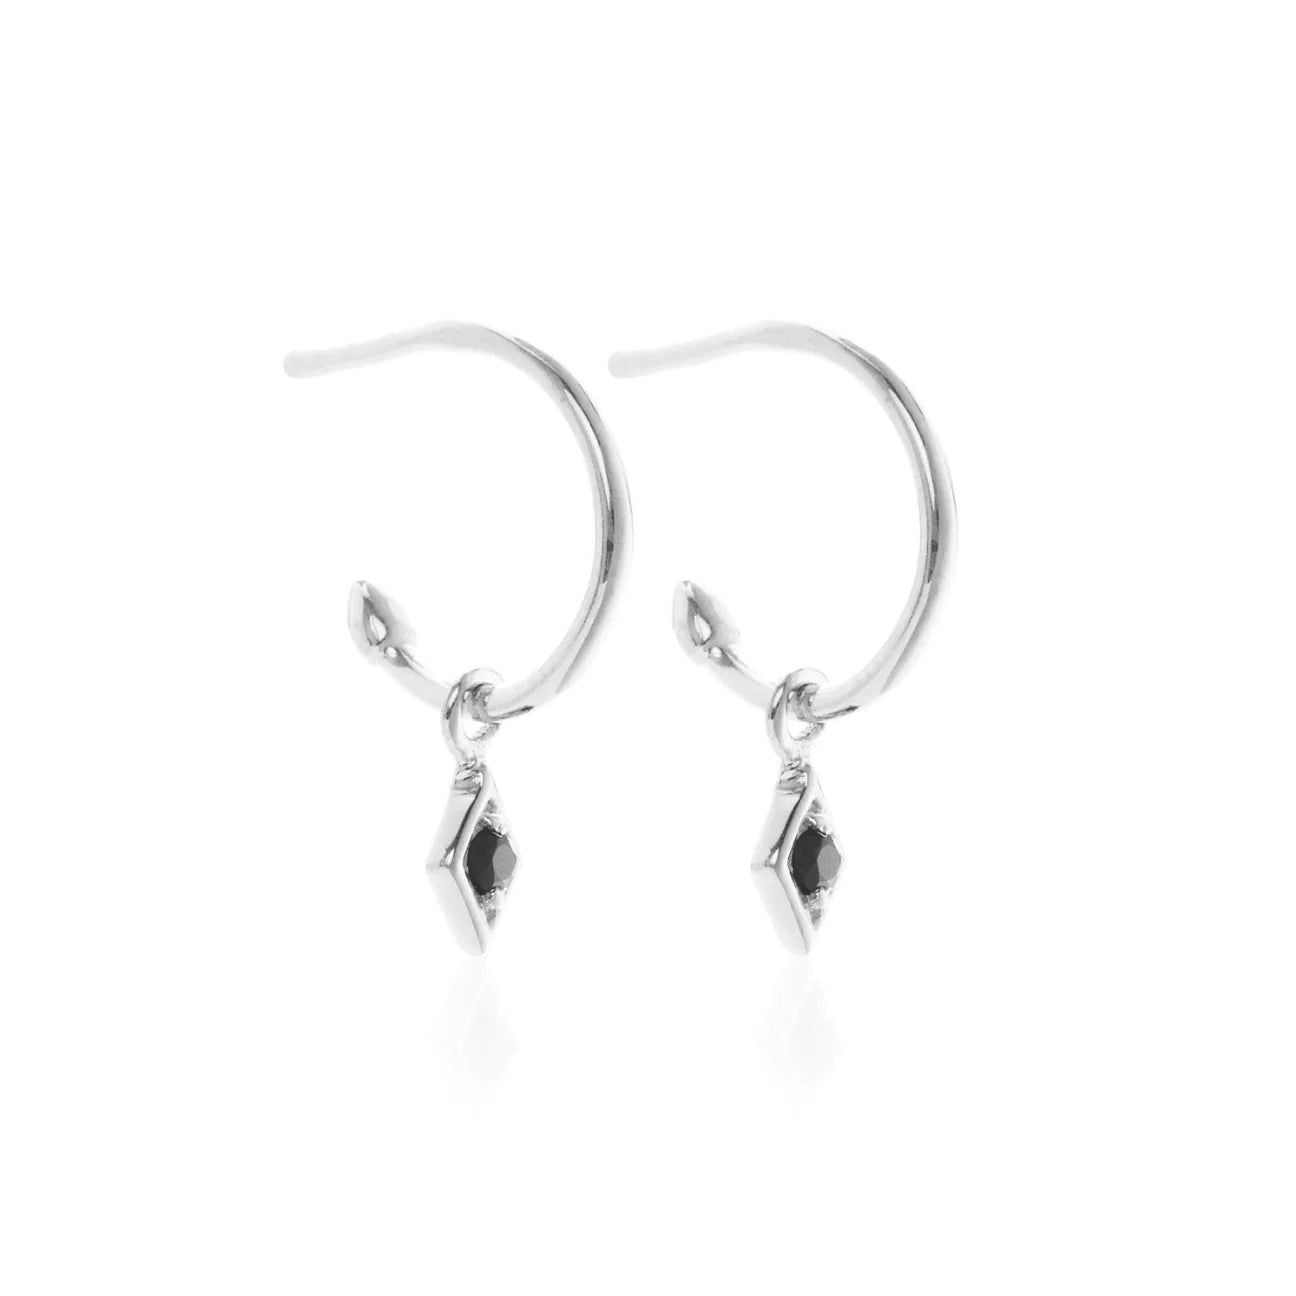 Black spinel gemstone hoop earrings